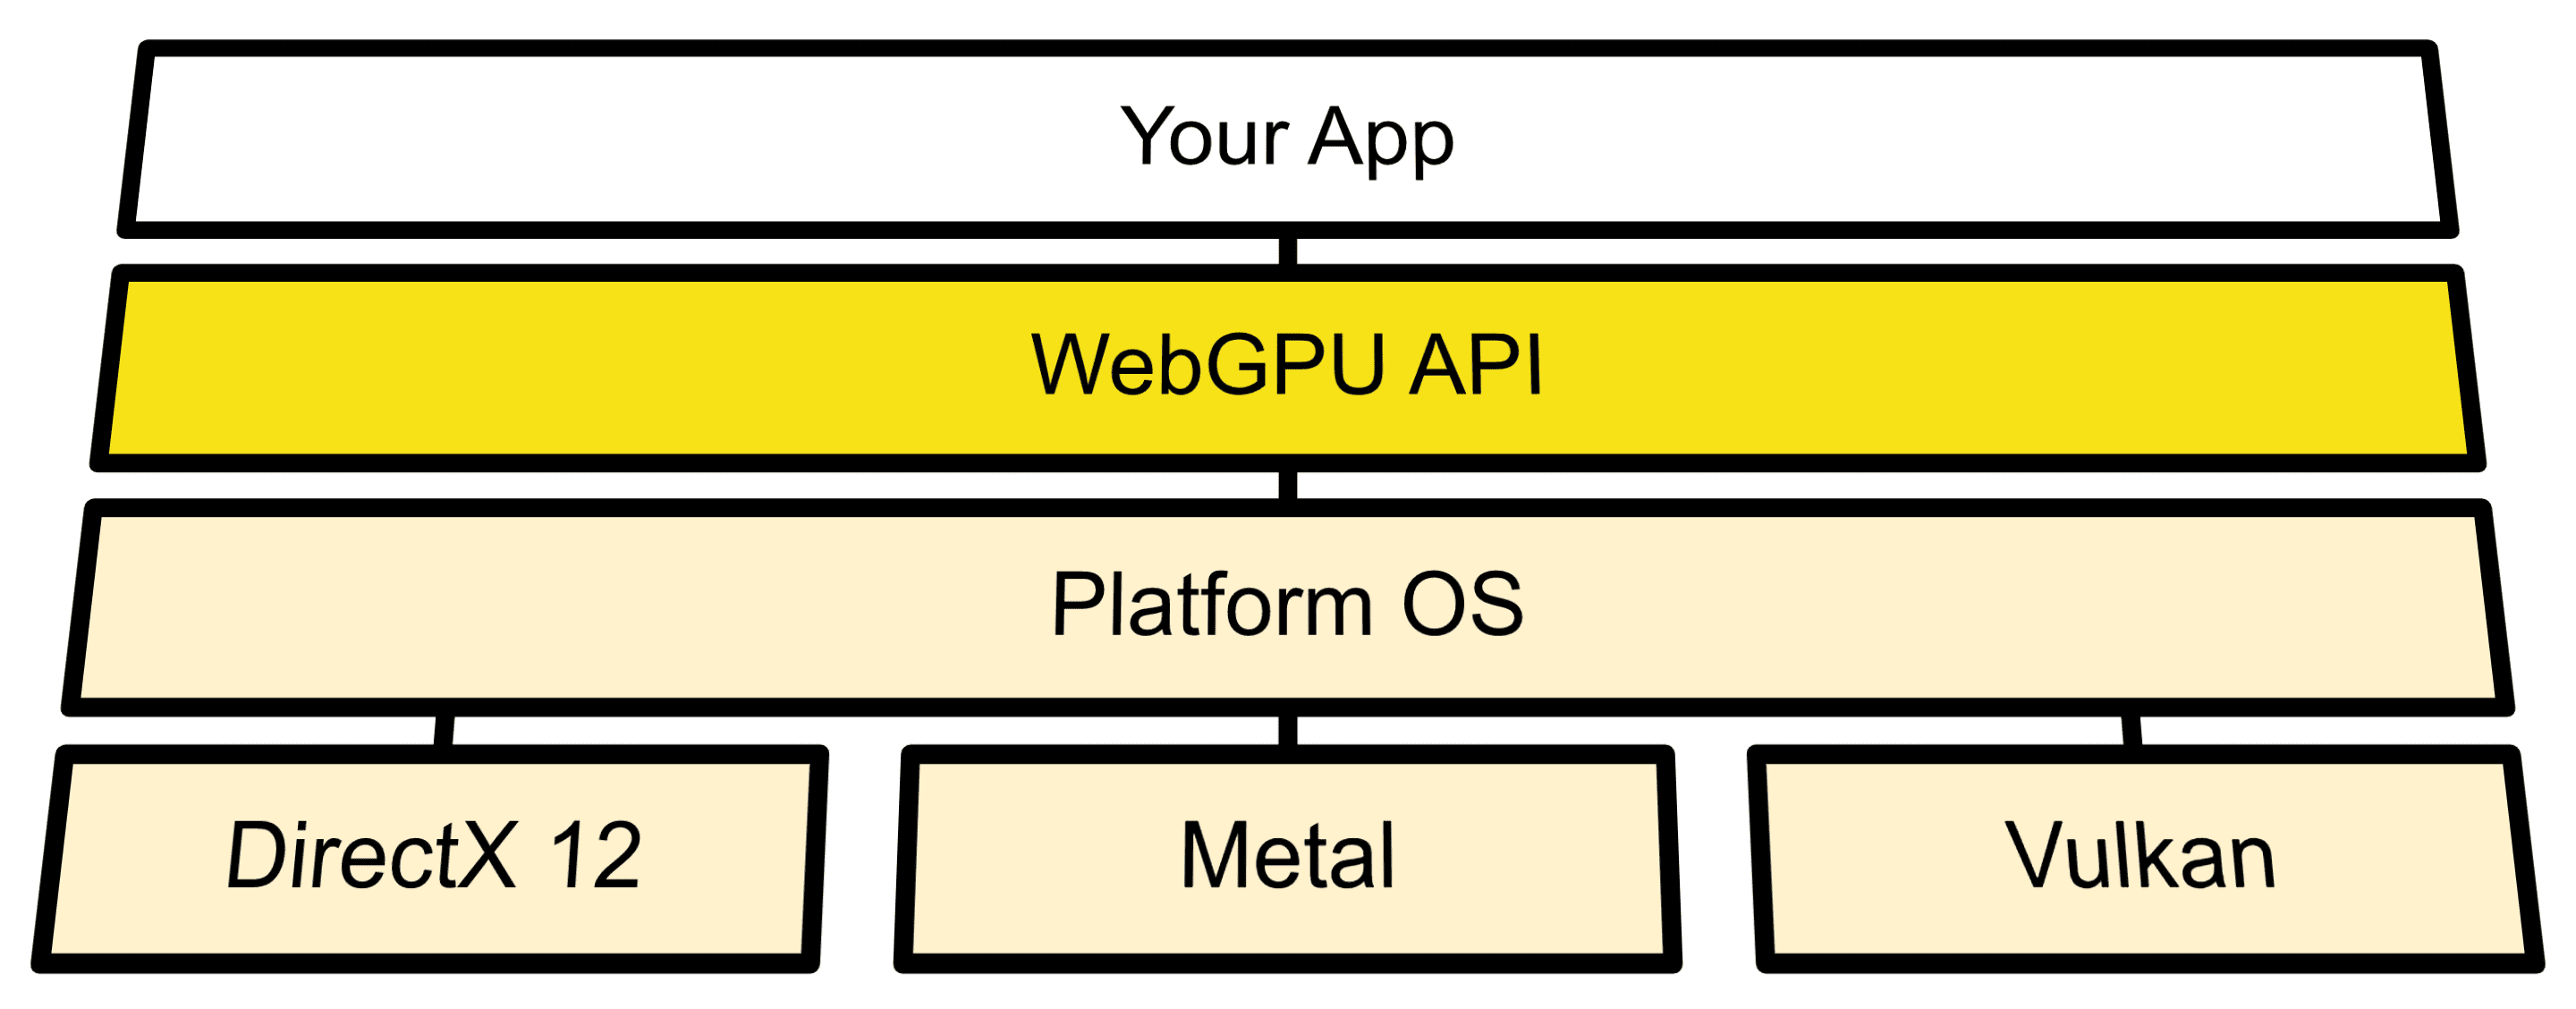 Sơ đồ cấu trúc cho thấy kết nối WebGPU giữa API hệ điều hành với Direct3D 12, Metal và Vulkan.